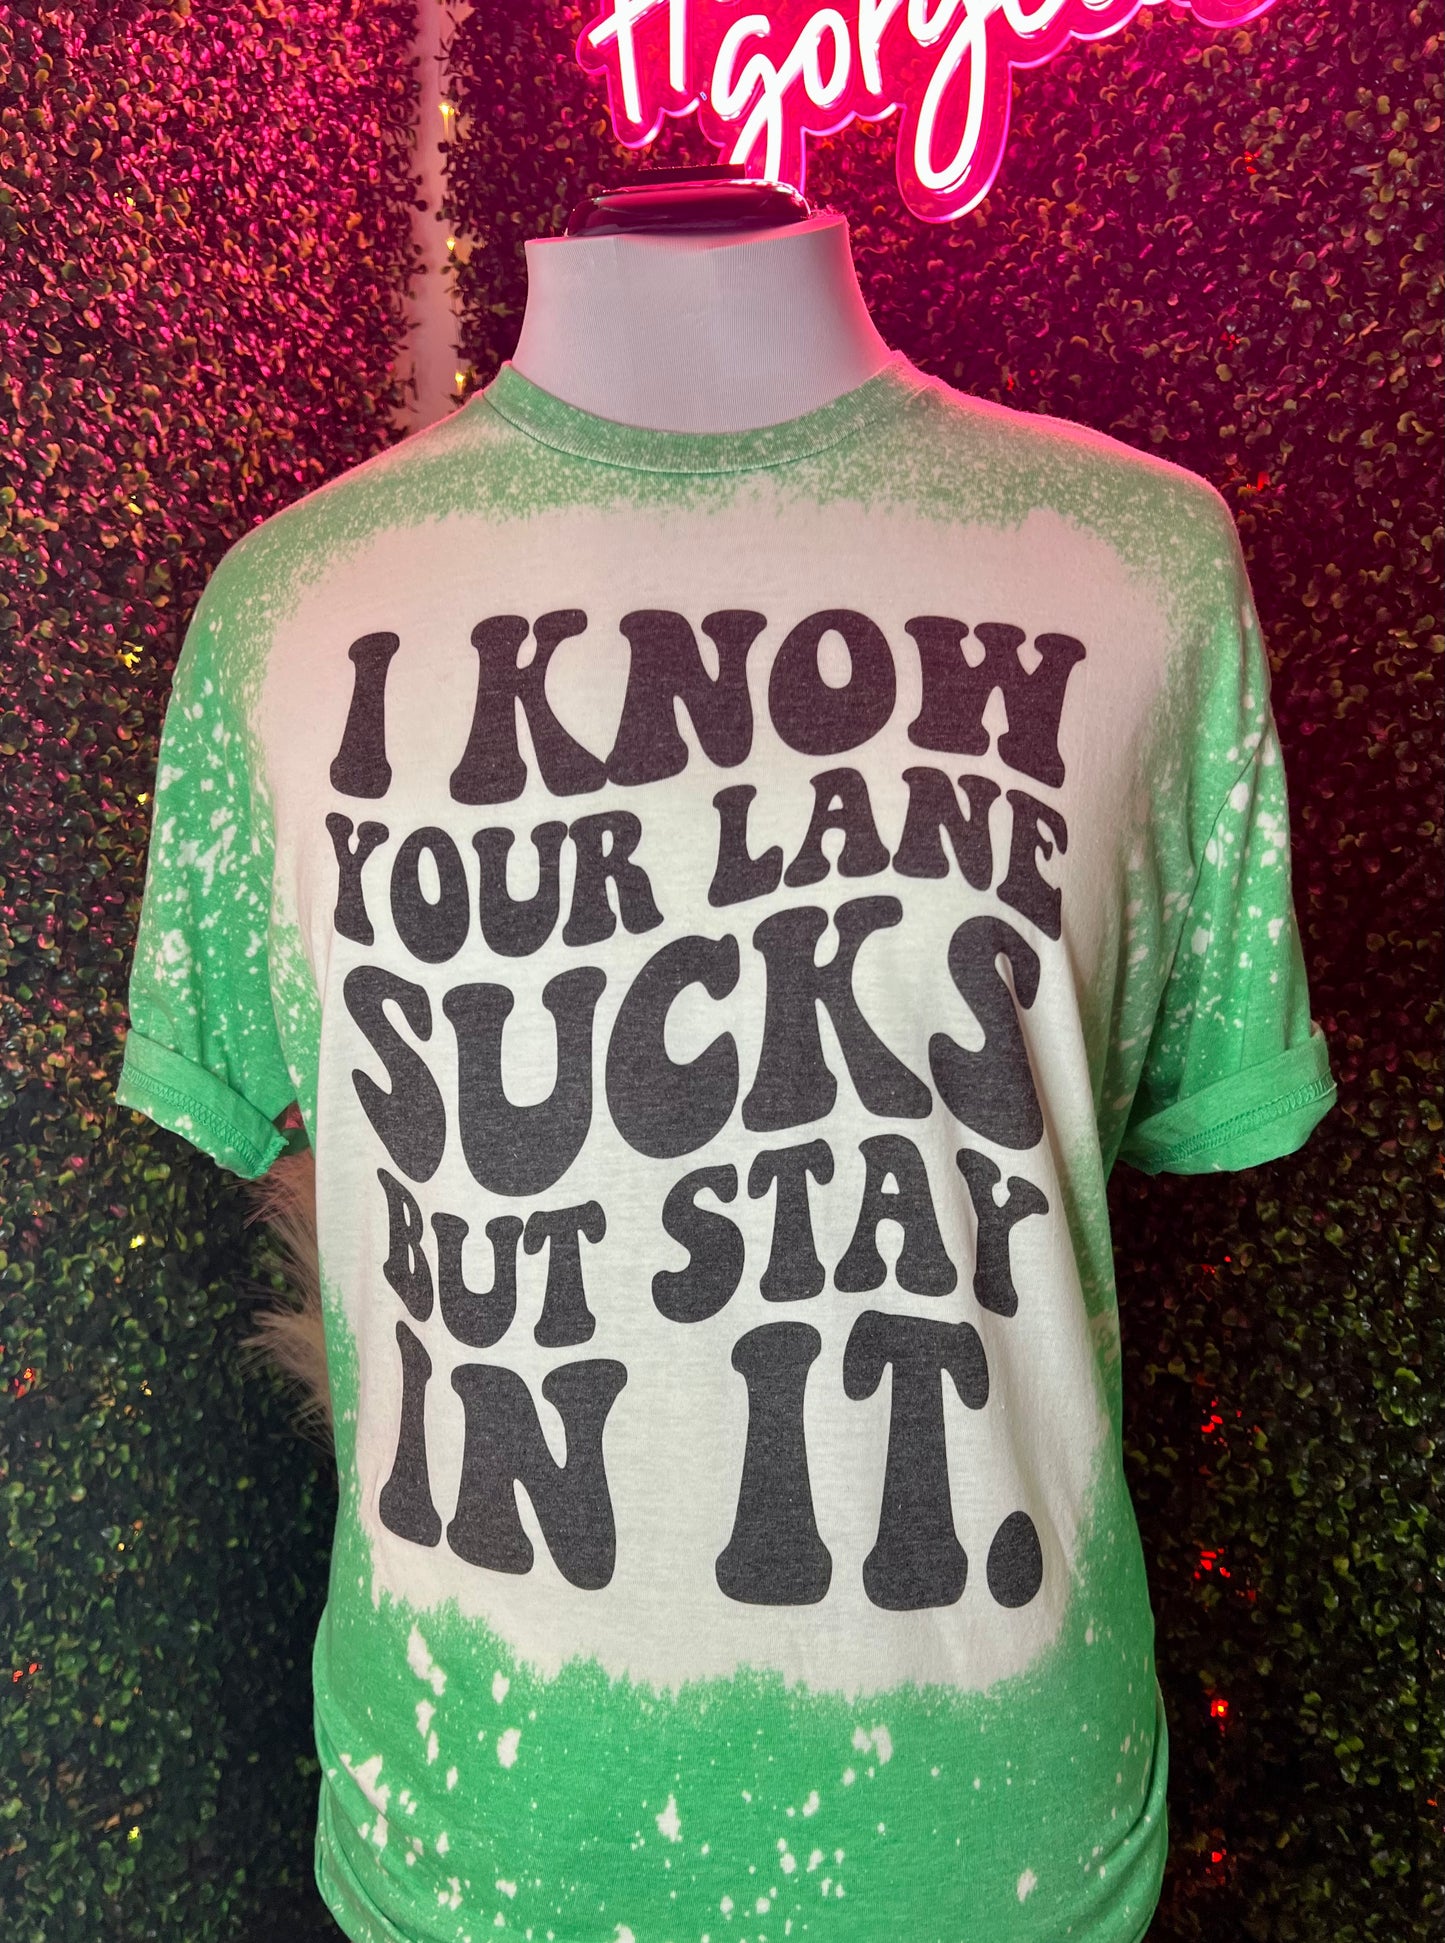 Your Lane Sucks